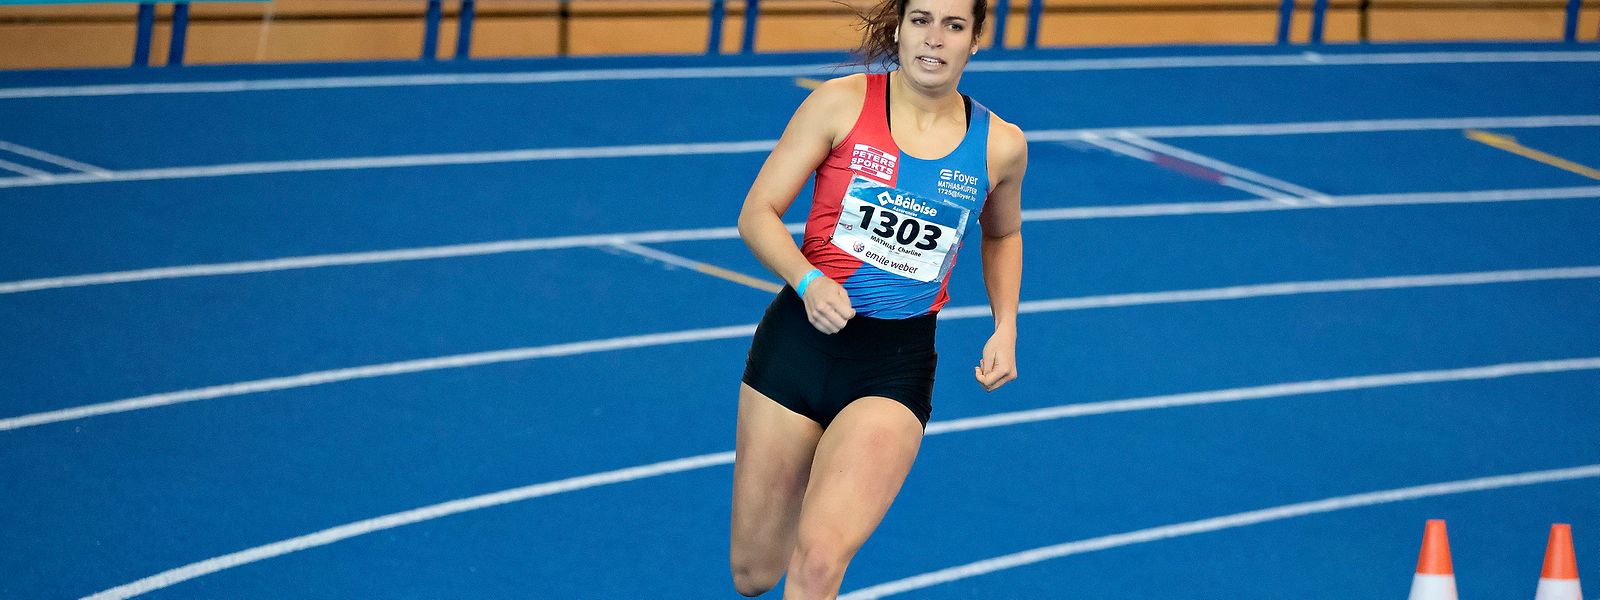 Charline Mathias sicherte sich die Landesmeistertitel über 800 m und über 400 m.